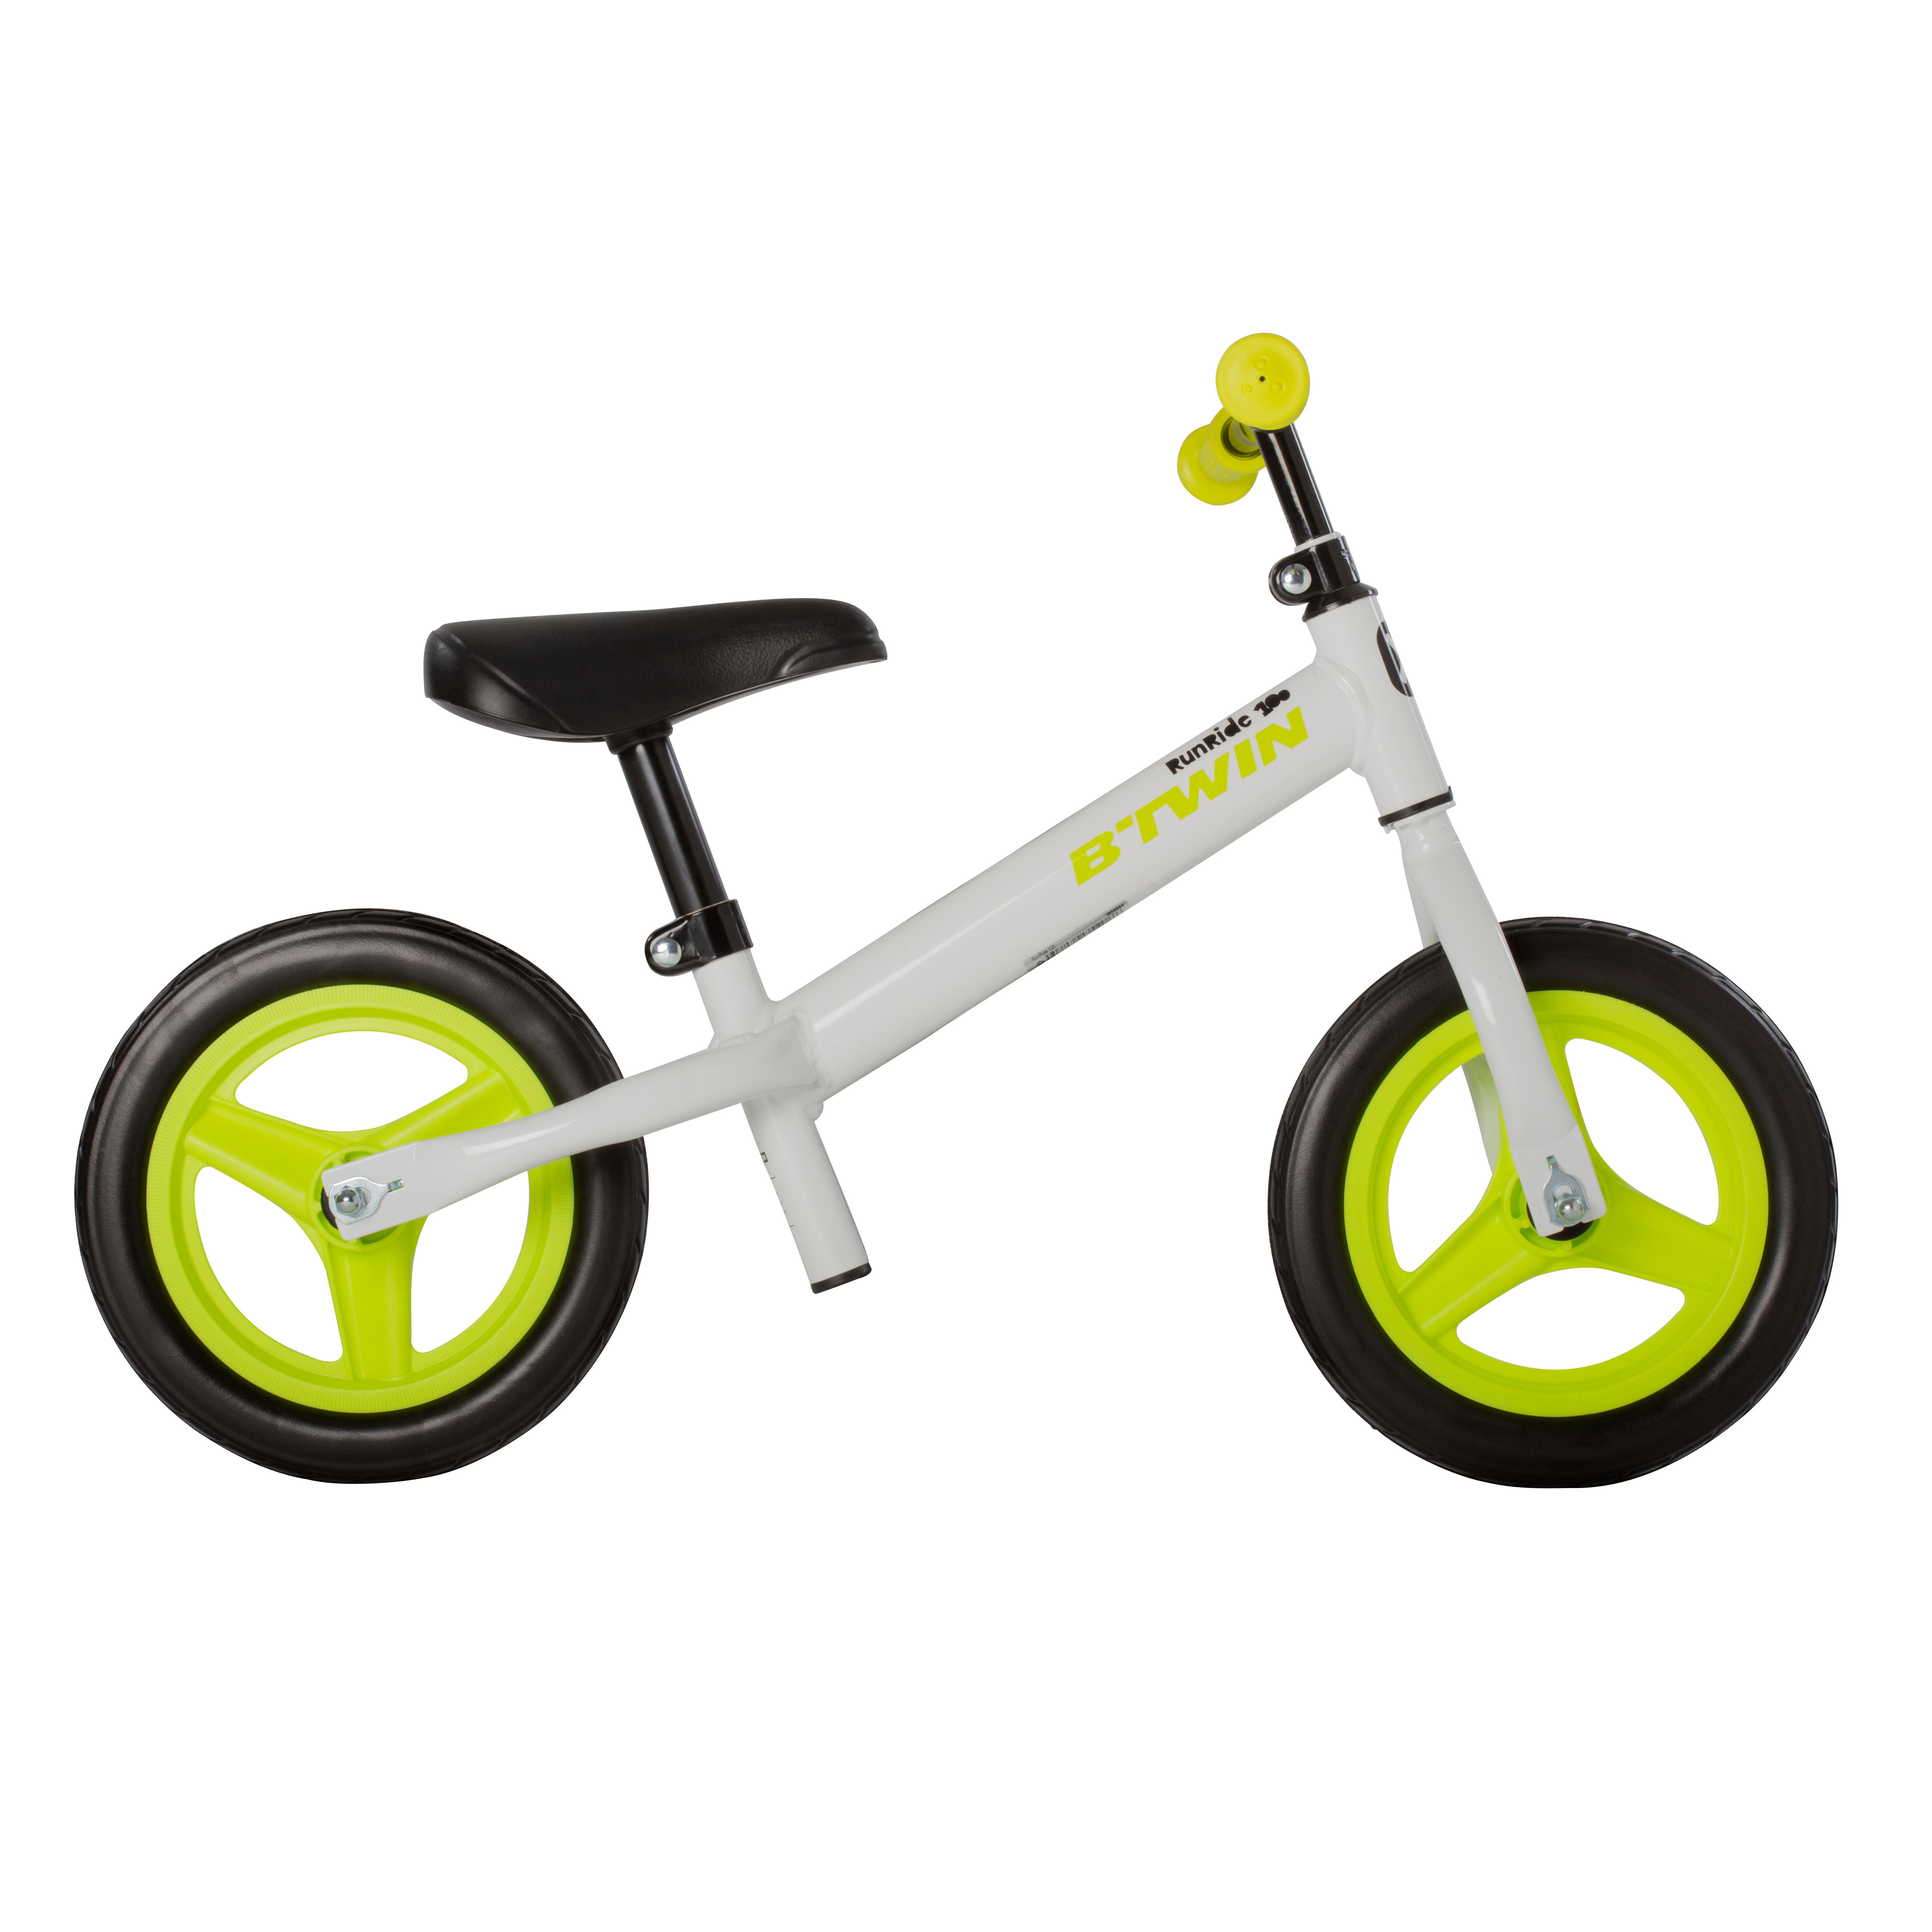 Buy Runride 100 kids bike online with 